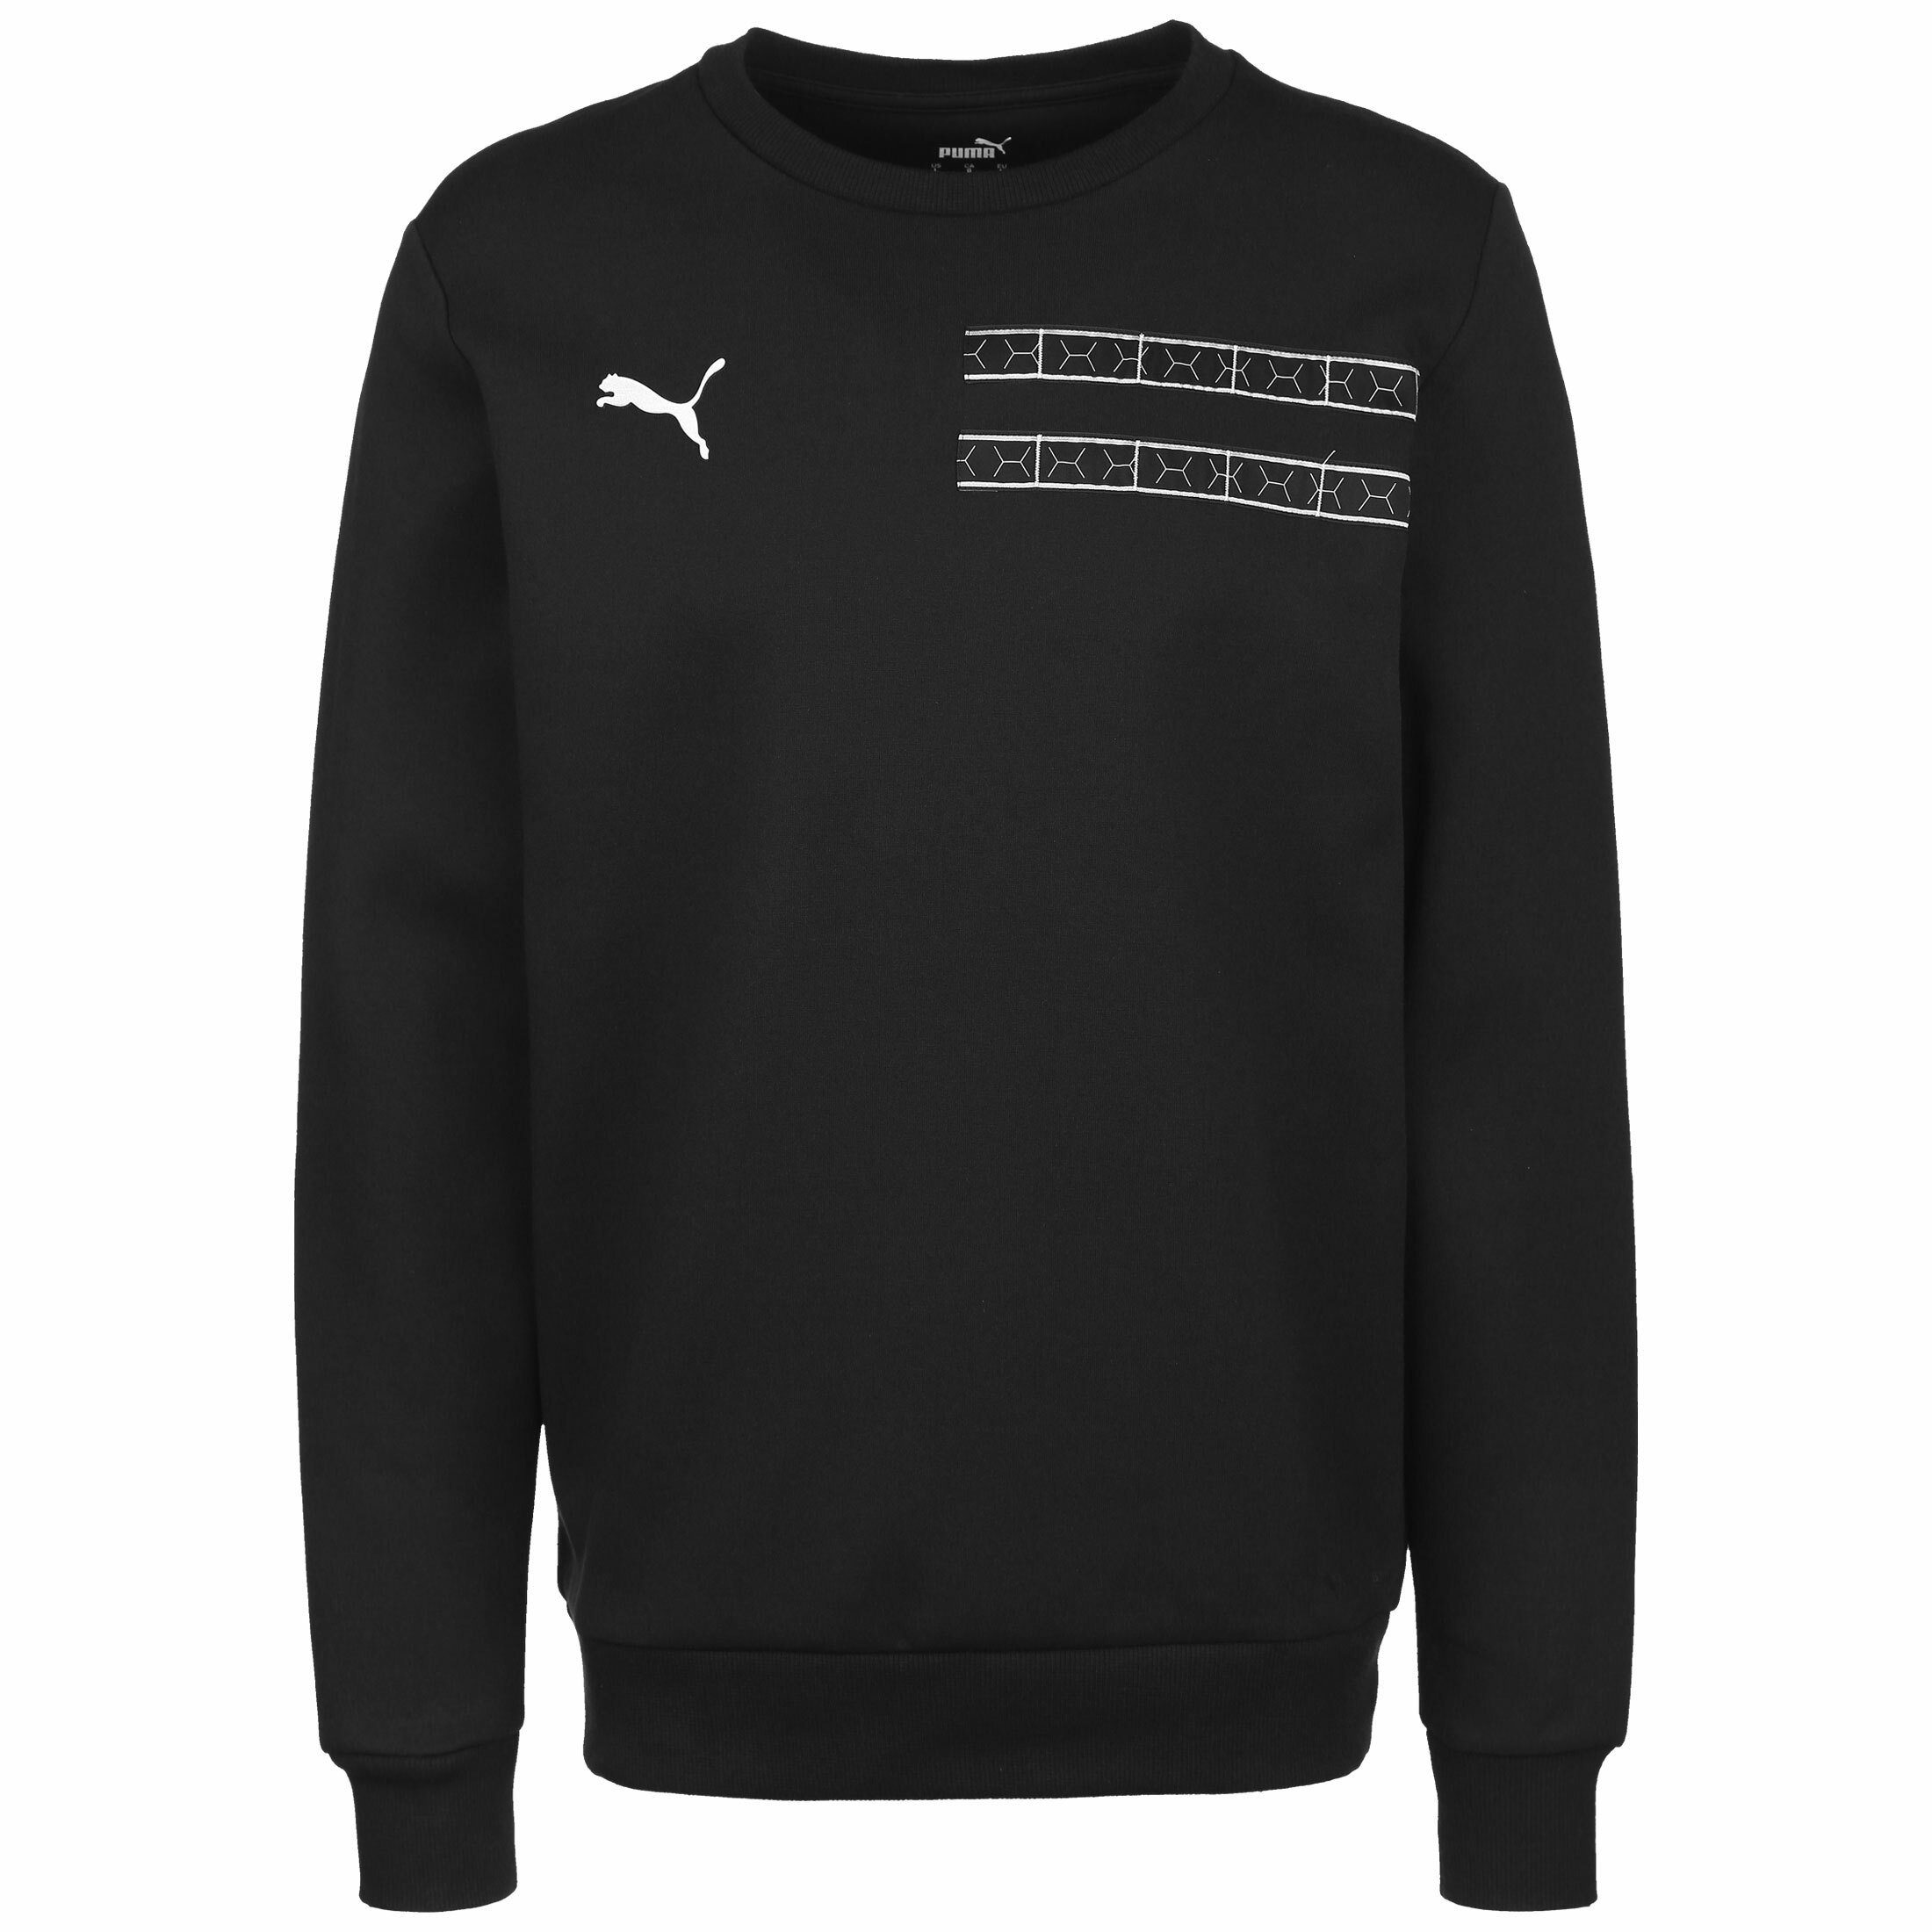 PUMA Sweatshirt »Puma X Balr« online kaufen | OTTO